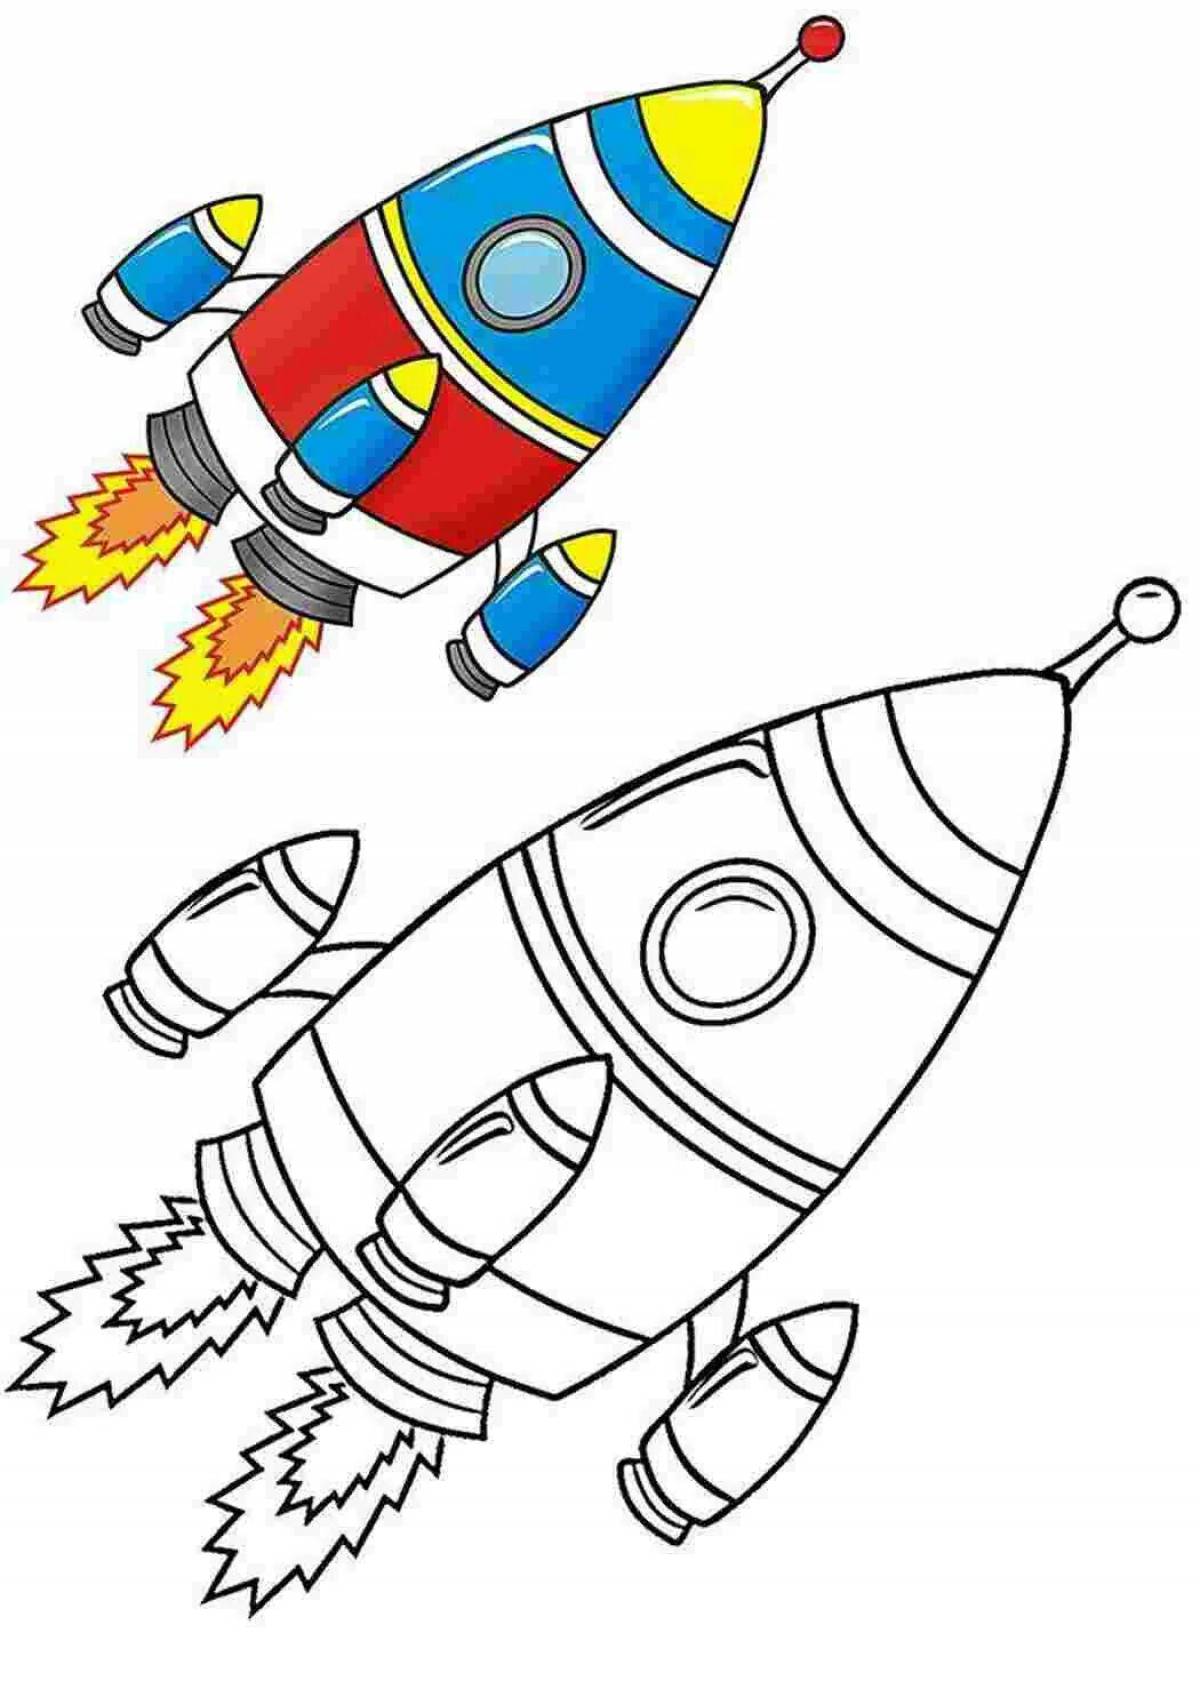 100 000 изображений по запросу Дети ракета доступны в рамках роялти-фри лицензии